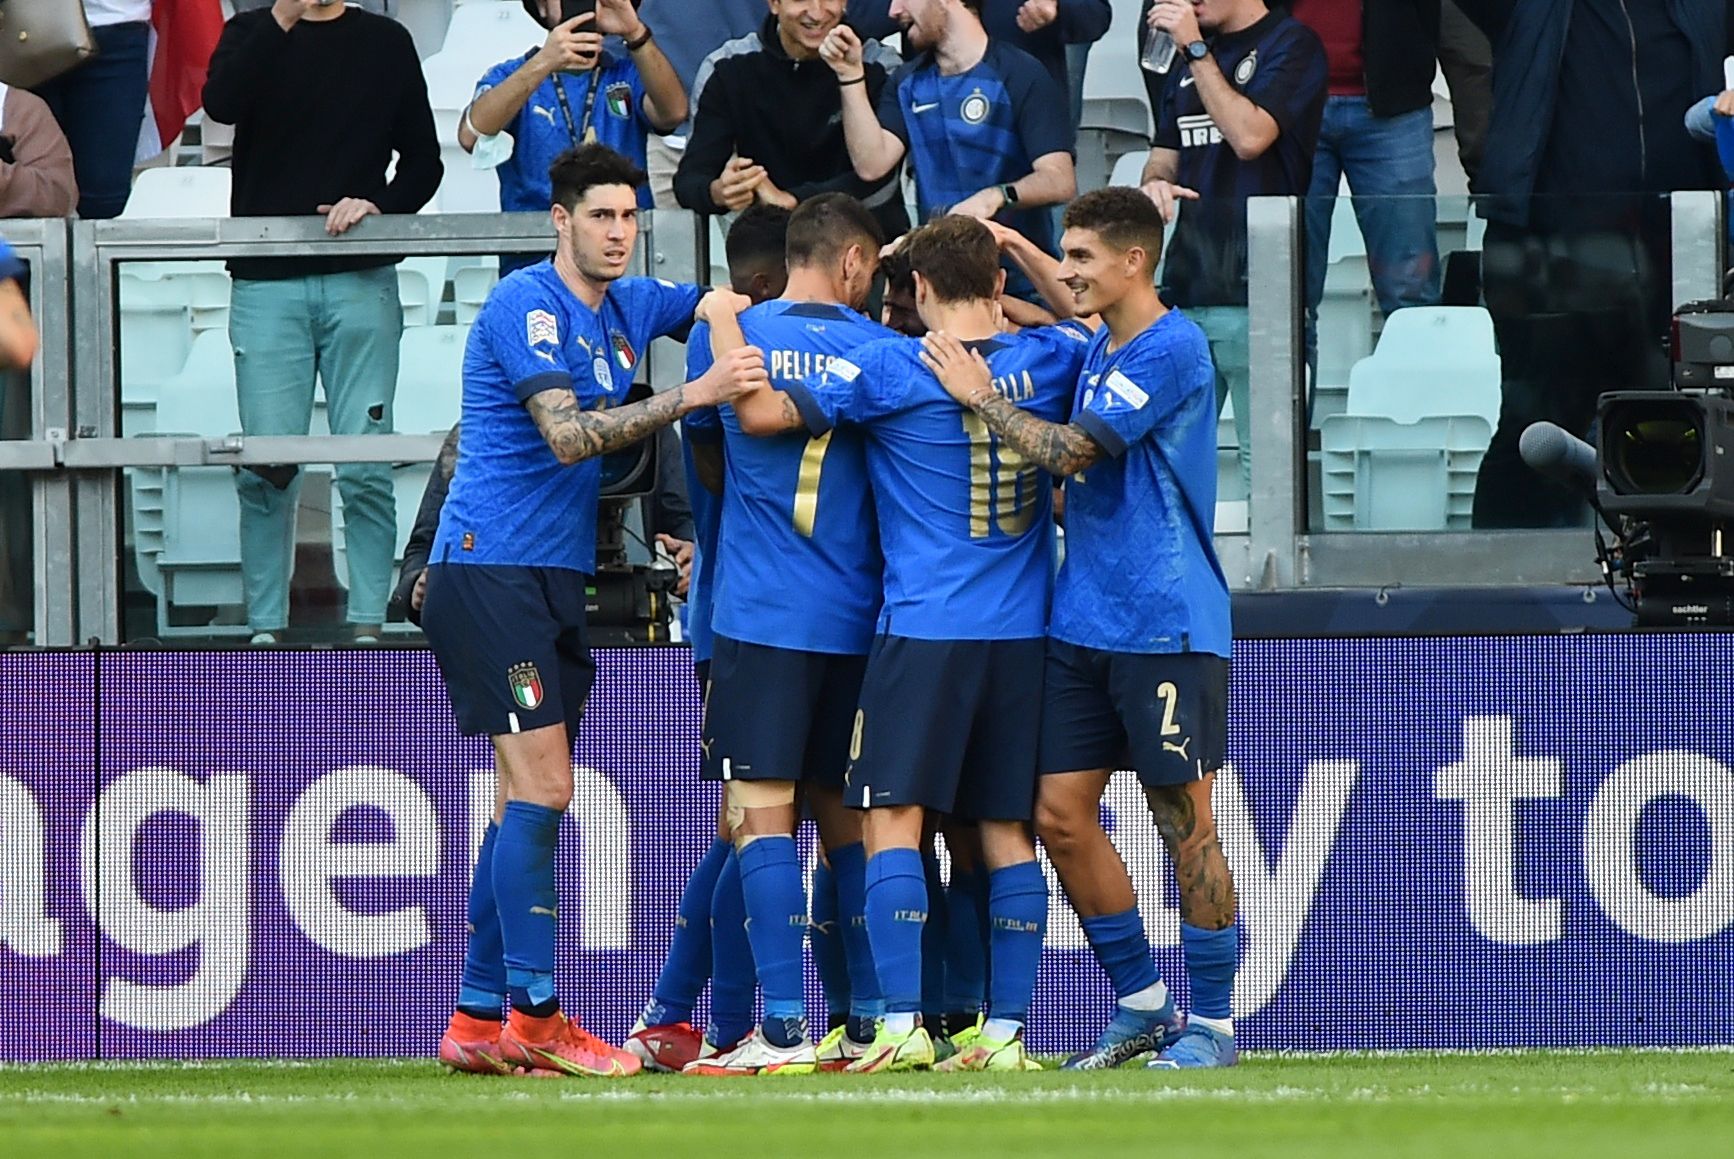 Les Italiens prennent le bronze en Ligue des Nations, ils ont poussé la Belgique 2:1 à Turin